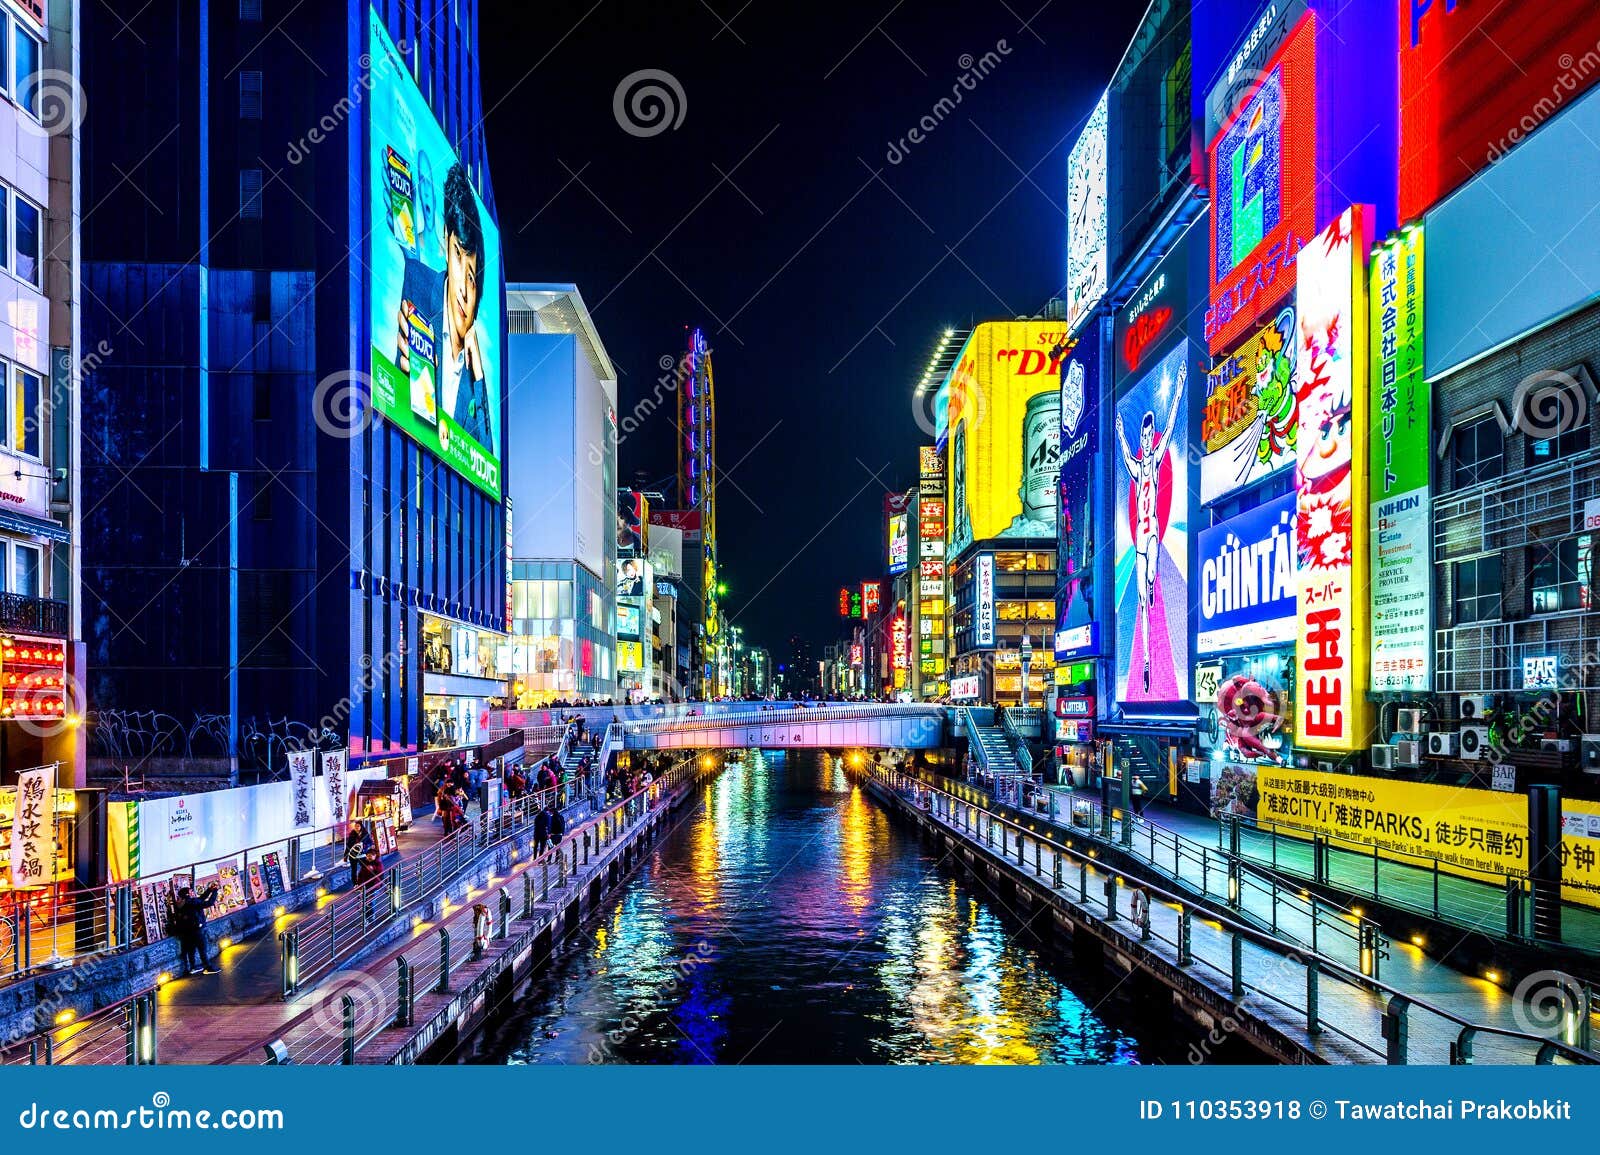 Tourist Walking In Night Shopping Street At Dotonbori In Osaka Japan Editorial Stock Photo Image Of Modern Ichiba